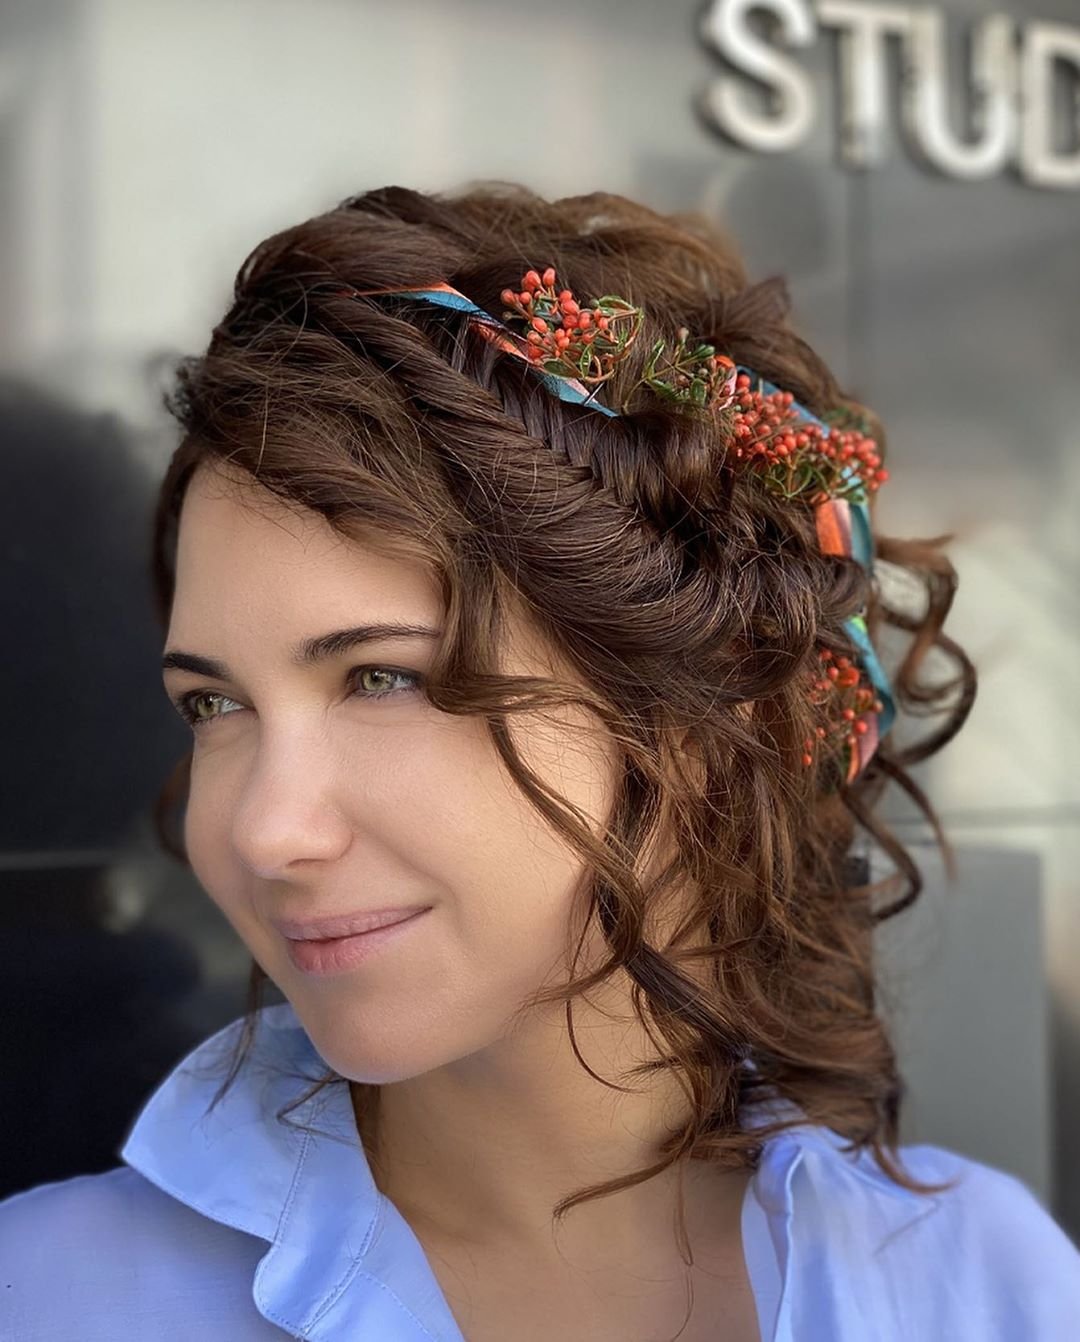 Екатерина Климова показала причёску с веточками рябины в волосах